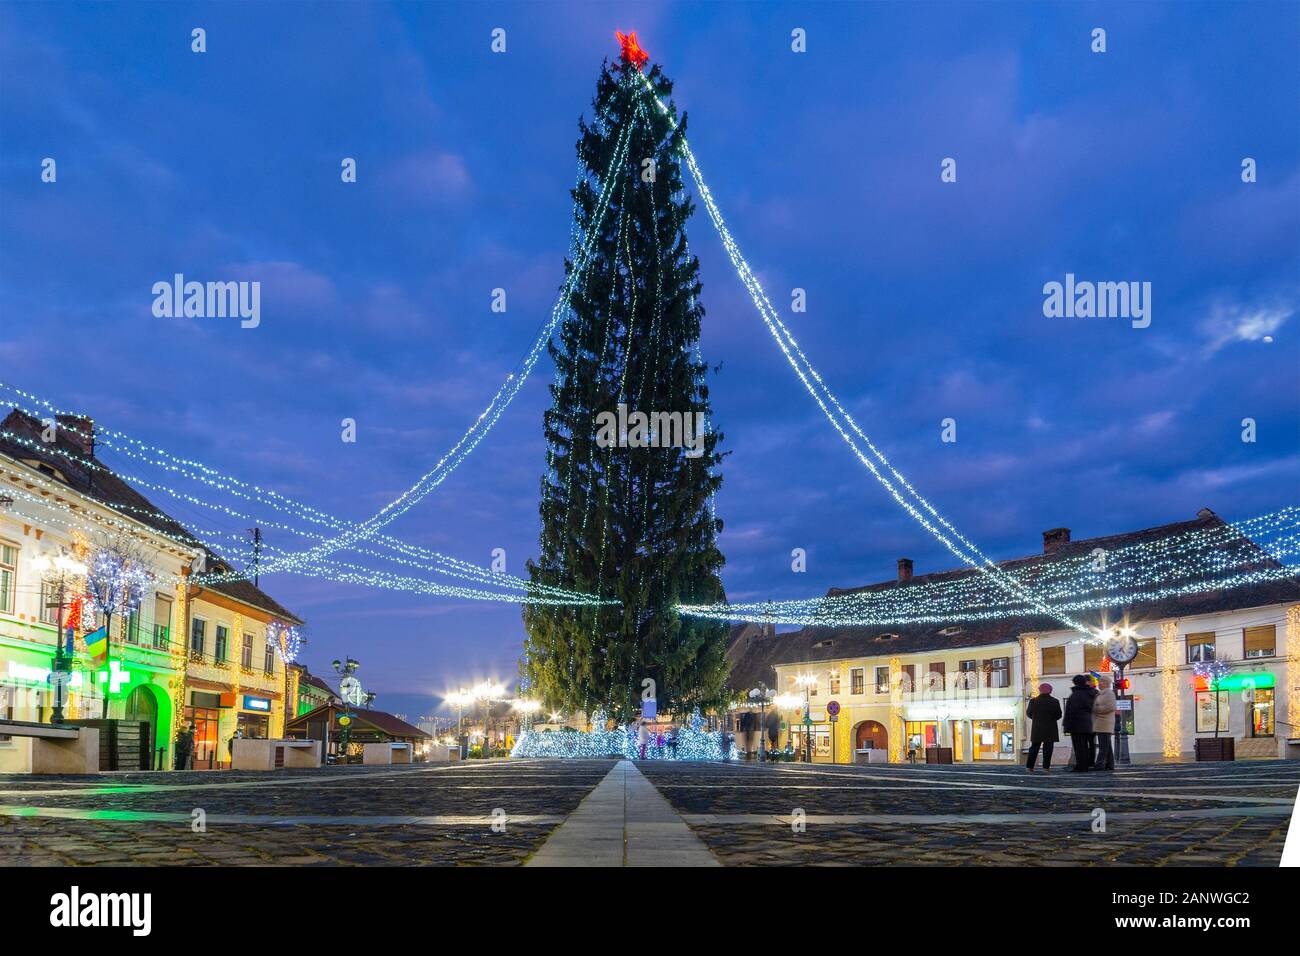 Winternacht Stadtbild mit Weihnachtsbaum im historischen Zentrum von Cisnadie (Kreis Sibiu), Siebenbürgen, Rumänien Stockfoto